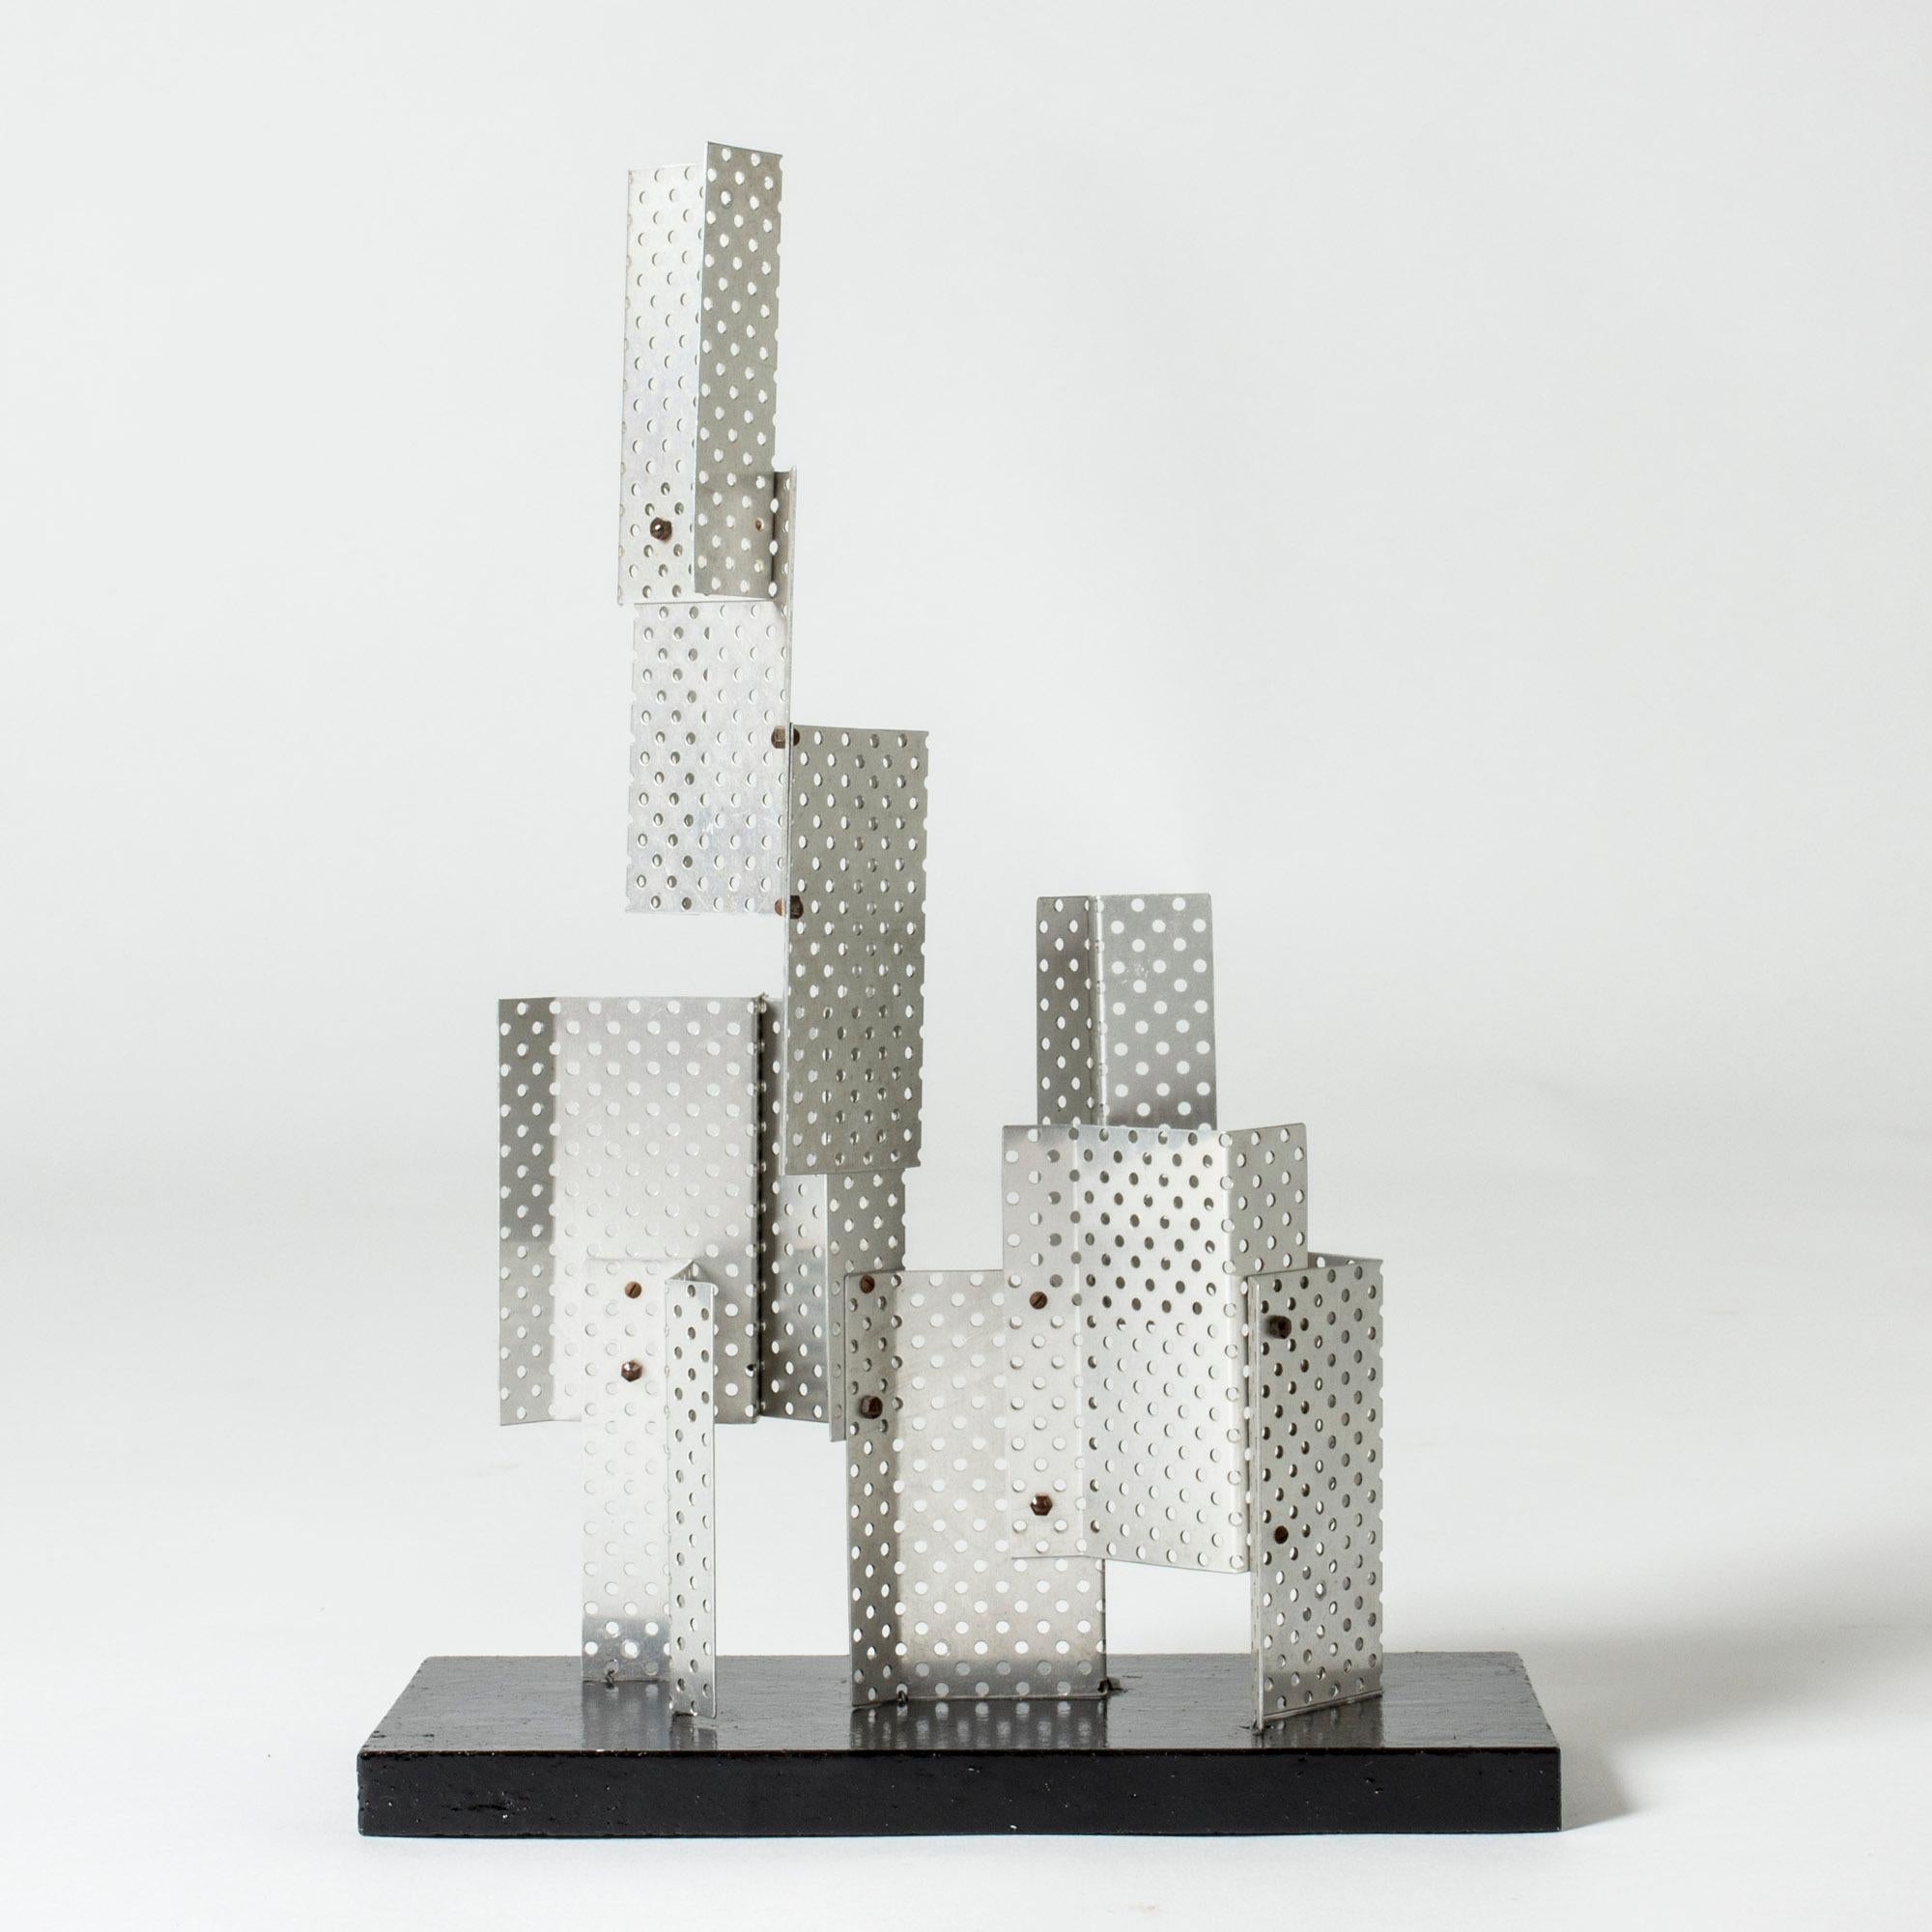 Sculpture étonnante de Lars Erik Falk, réalisée en aluminium perforé. Les différents angles créent un magnifique jeu de lumière.